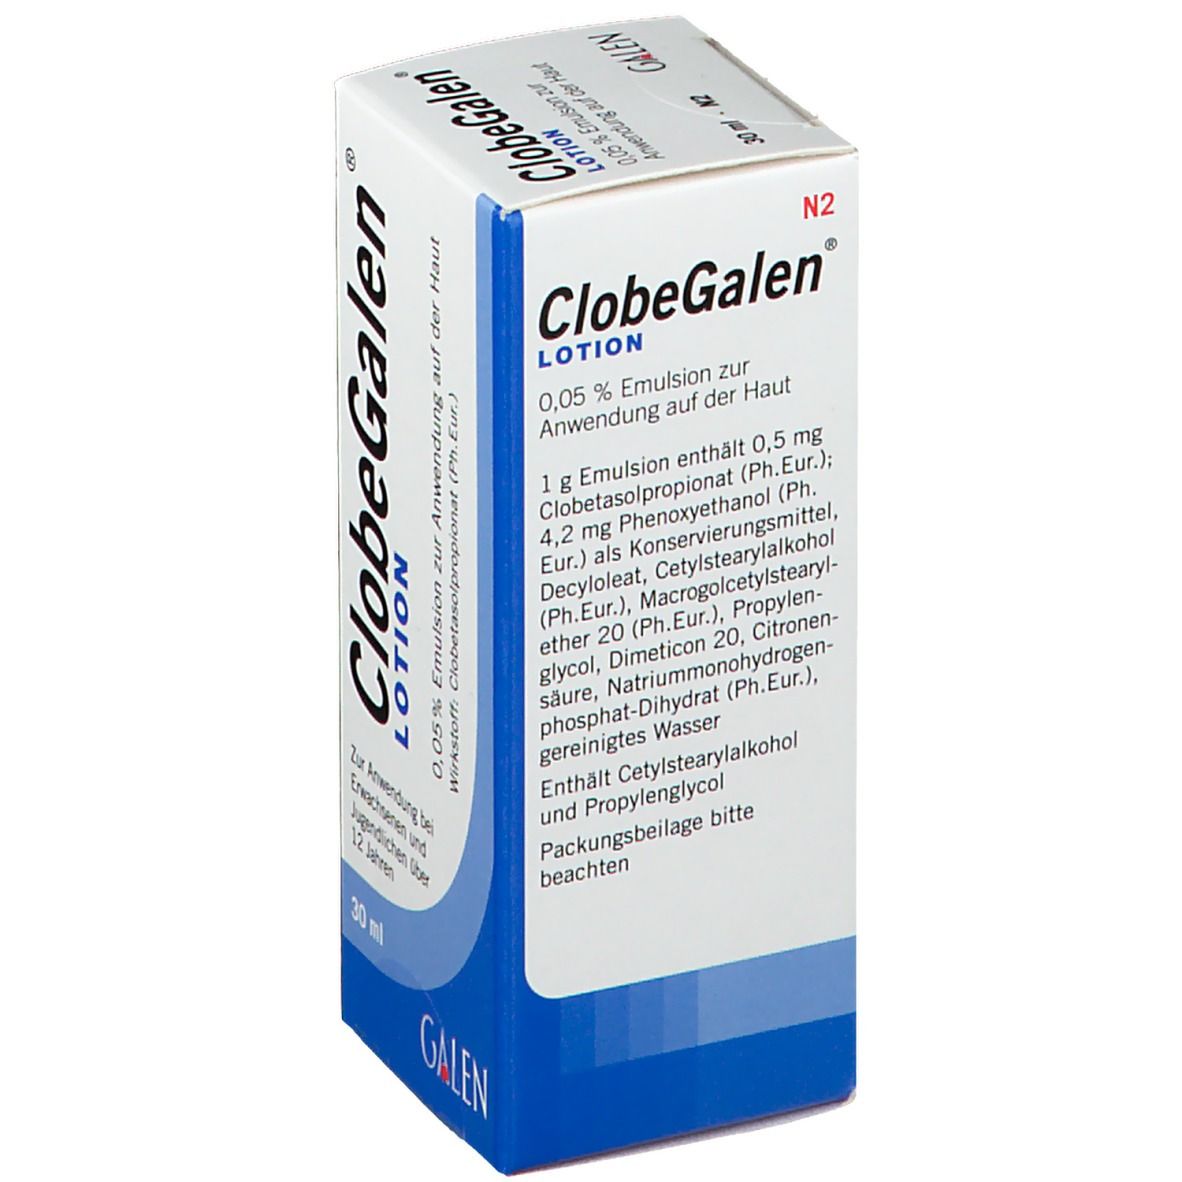 ClobeGalen® Lotion